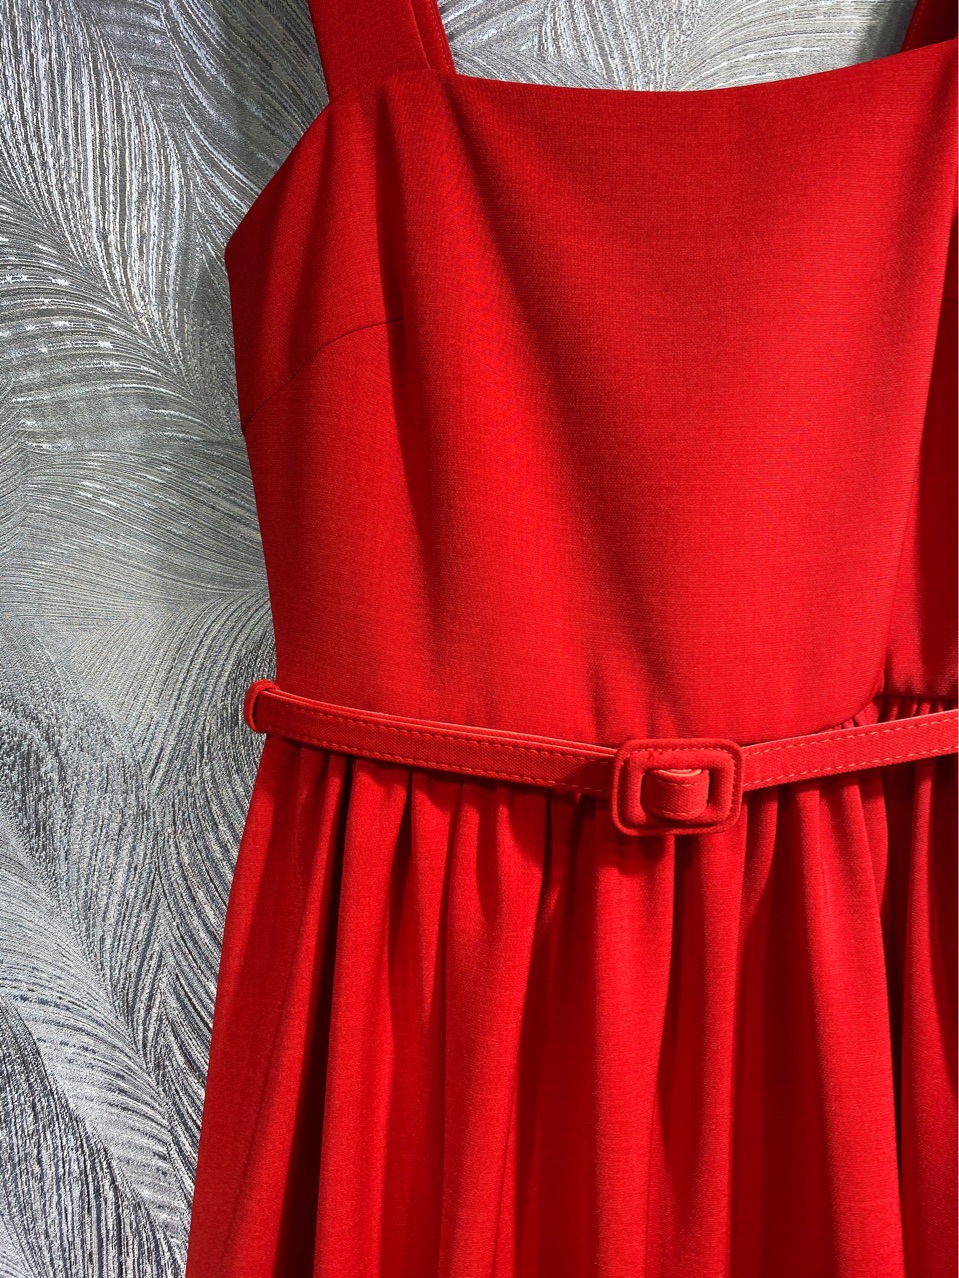 10026 XL 2024 Runway-jurk lente zomerjurk spaghetti rood zwart merk dezelfde stijl damesjurk mode hoge kwaliteit LT